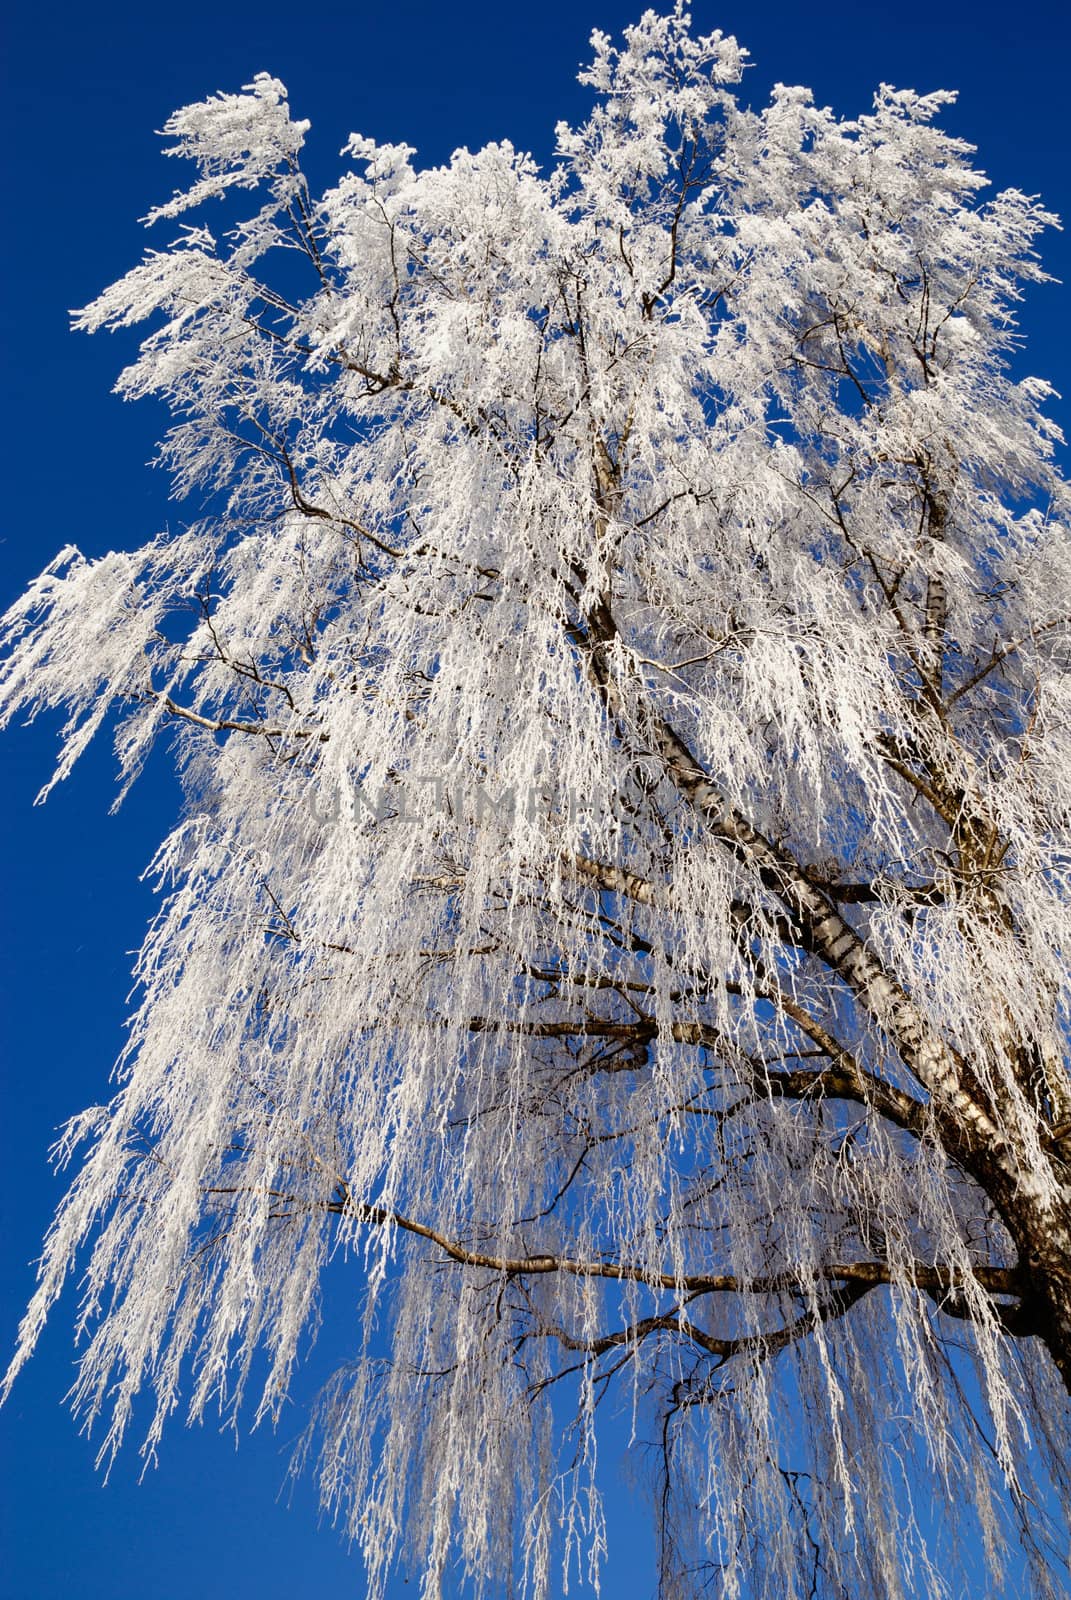 Frost on beautiful tree in austrian winter under blue sky.